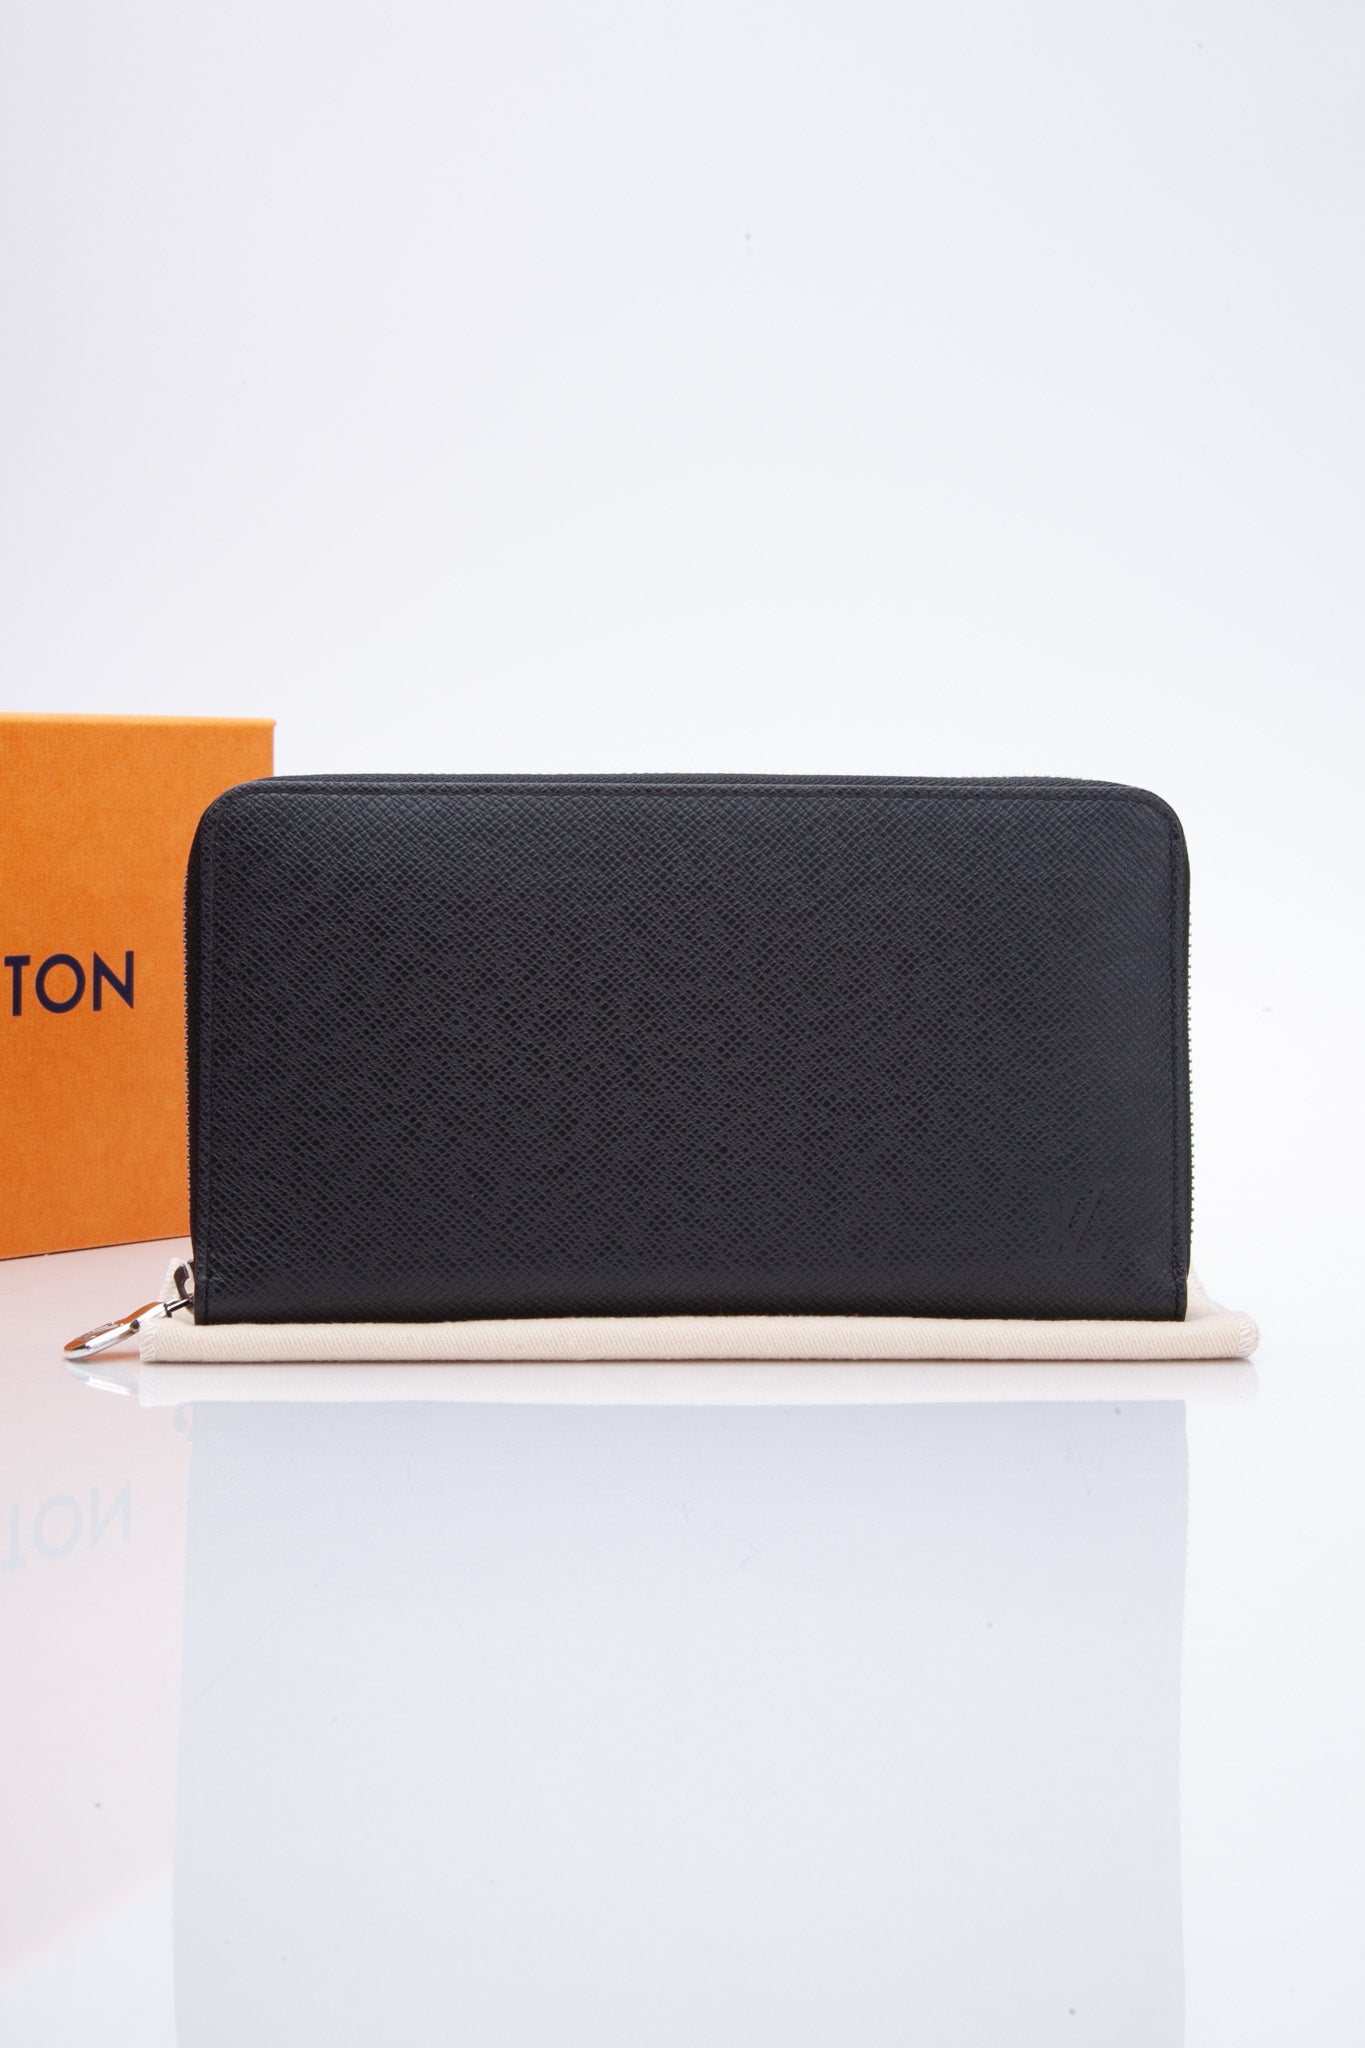 Louis Vuitton Black Taiga Leather Zippy Organizer XL Travel Wallet